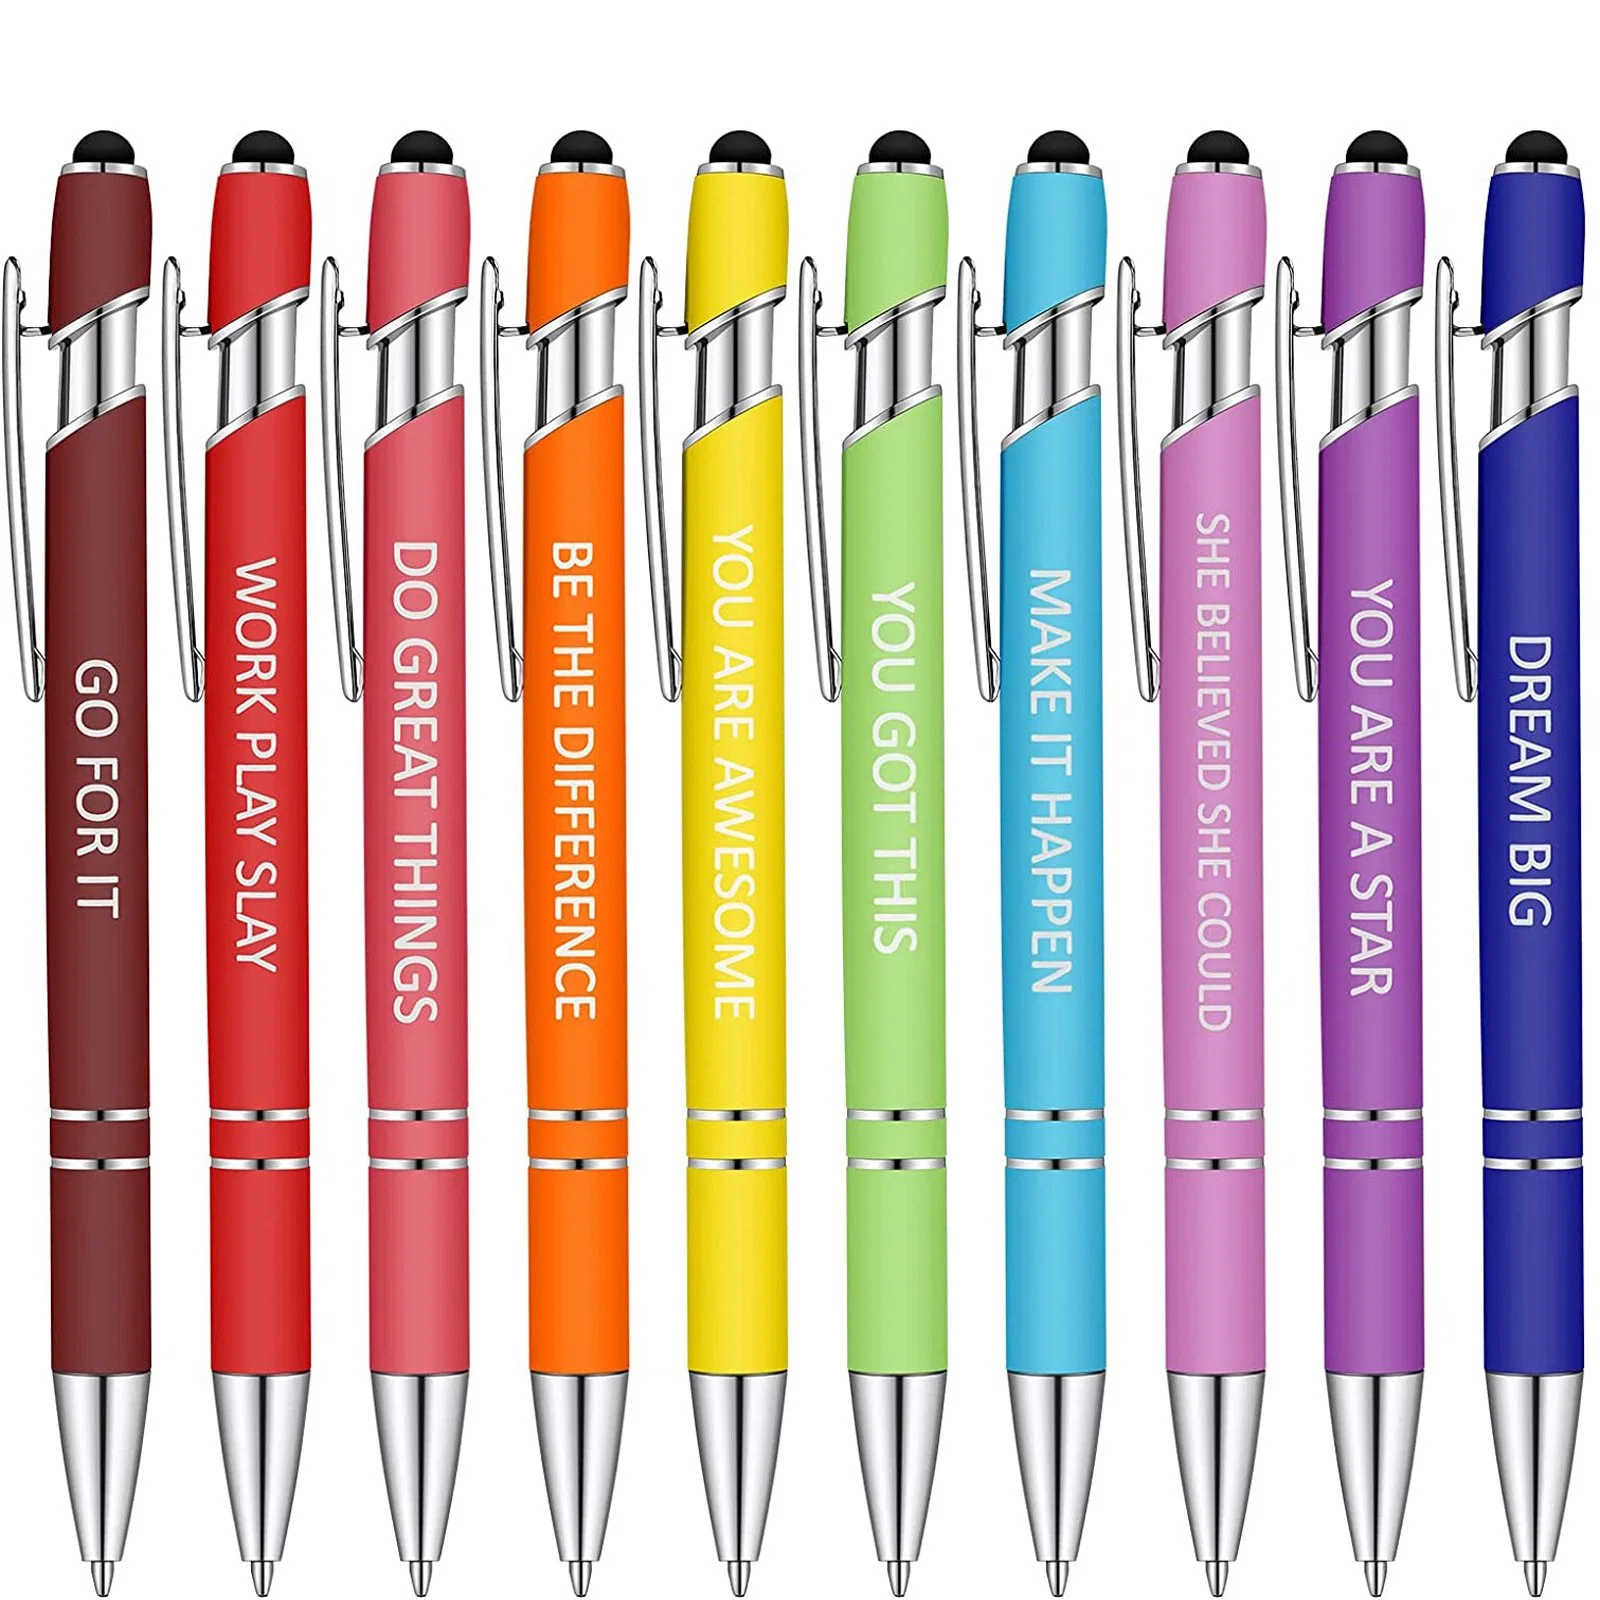 7PCS Funny Pen Set Week Pens Office Supplies Daily Work Office Ballpoint Pen Set